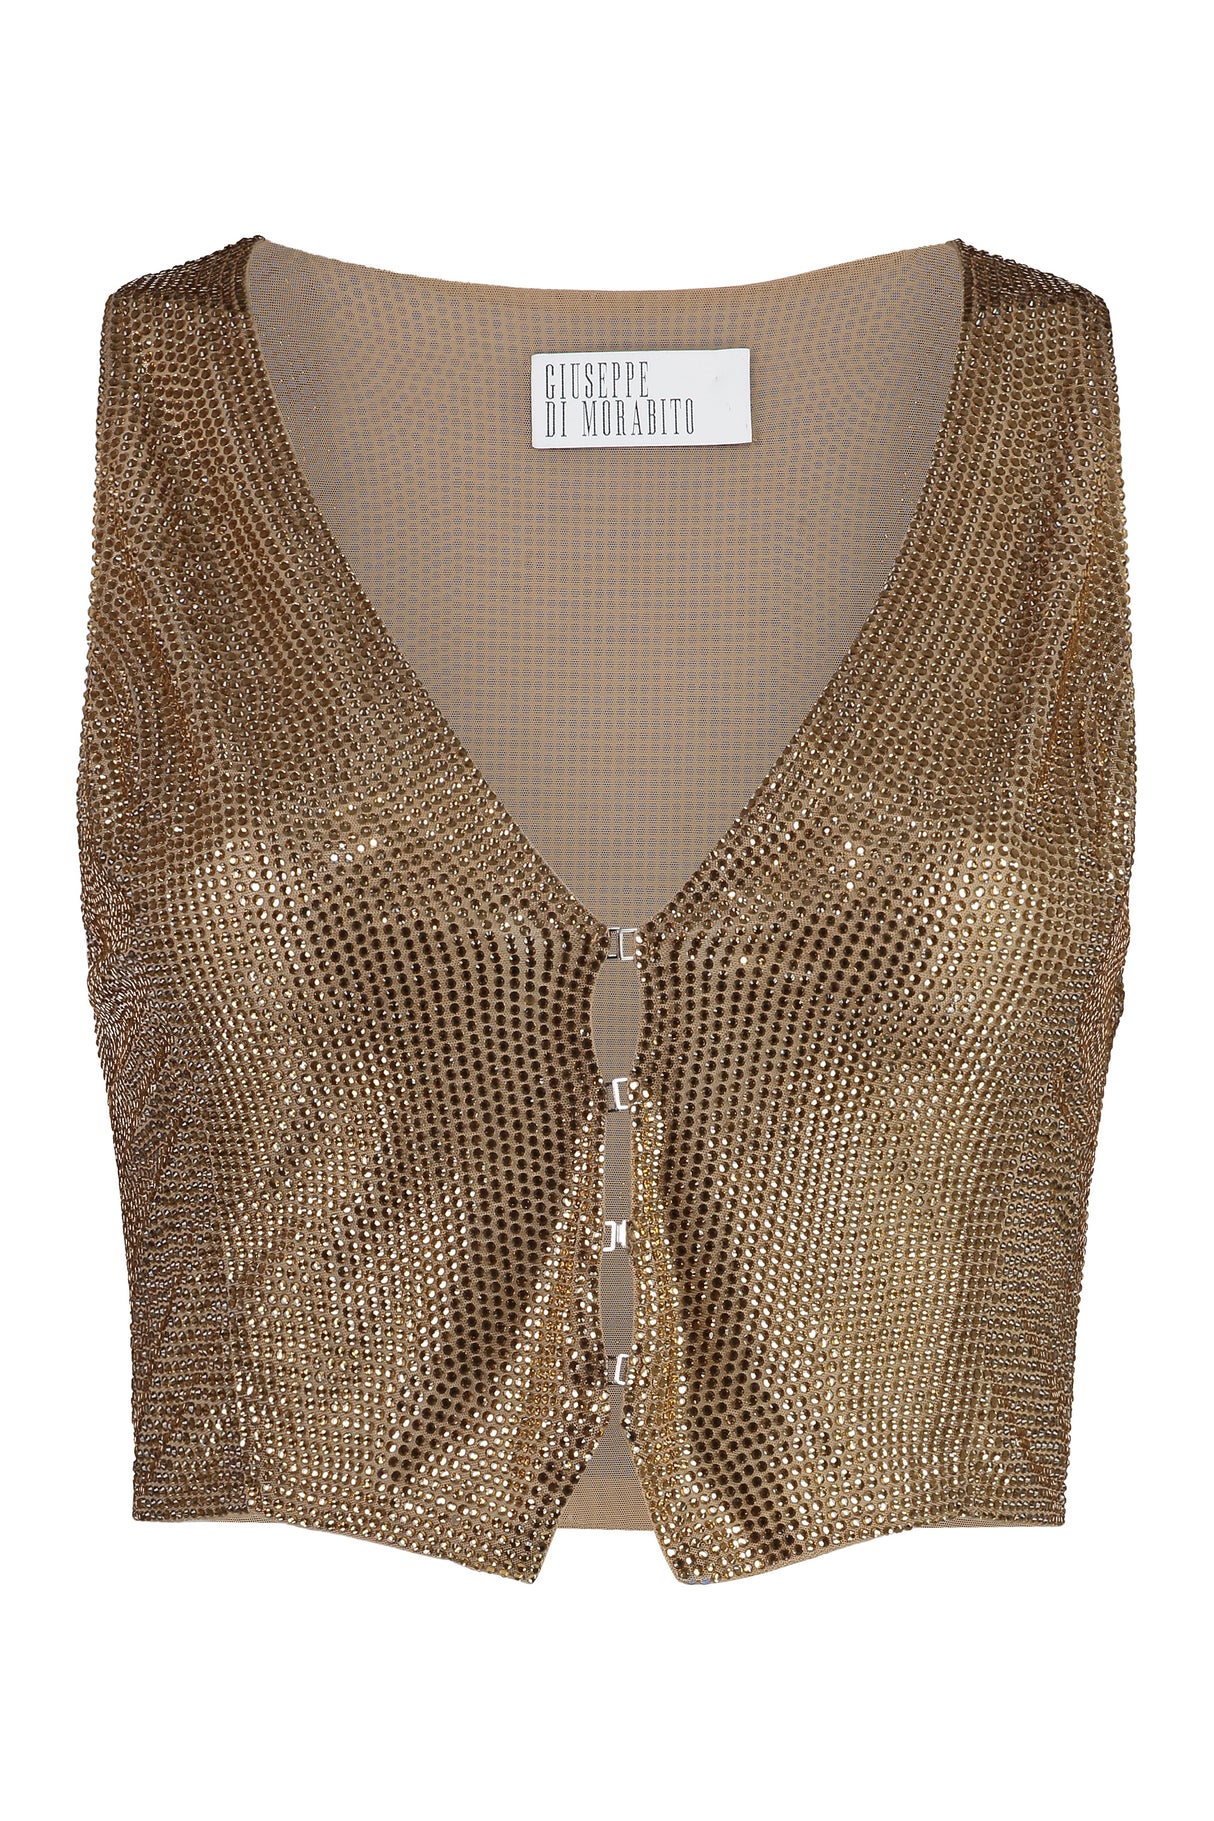 耀眼的米色鑽石網紗背心 (Glamorous Beige Rhinestone Tulle Vest for Women)